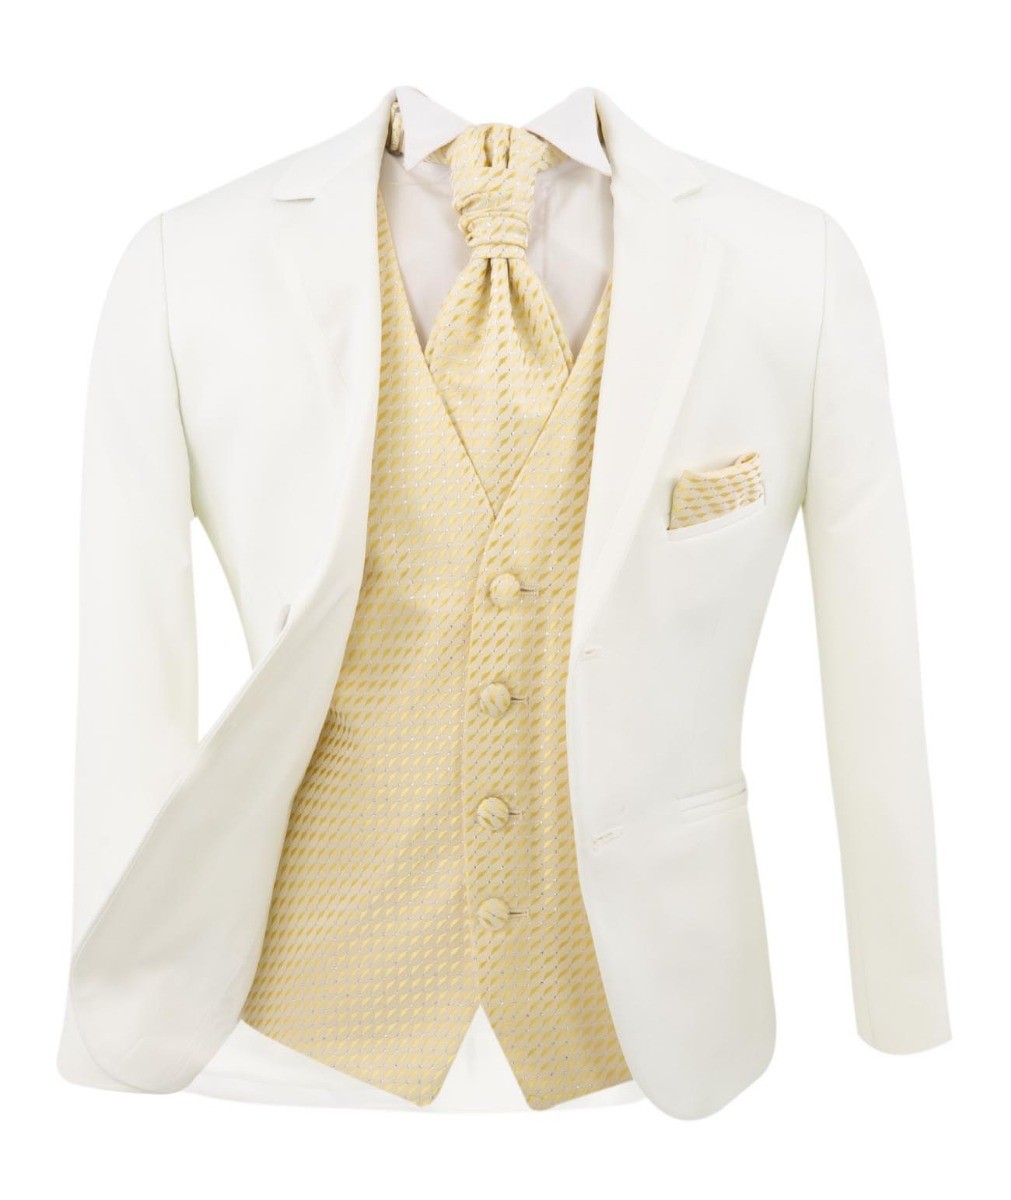 Jungen Weißer Anzug mit Goldenem Weste und Krawatten-Set